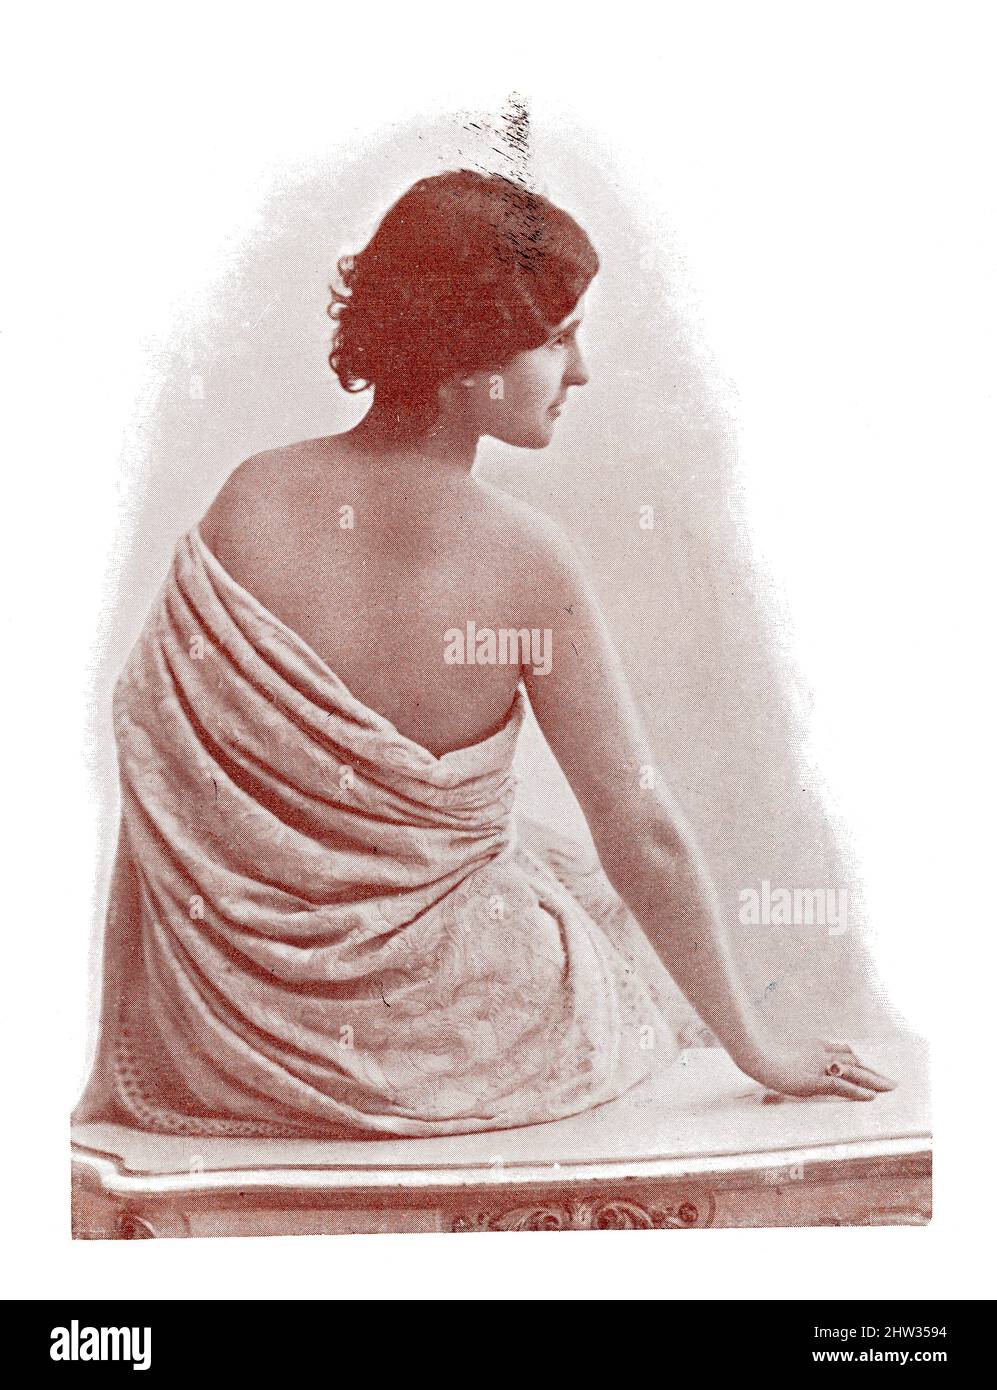 Ritratto di una ballerina spagnola. Immagine della rivista teatrale francese-tedesca 'Das Album', 1898. Foto Stock